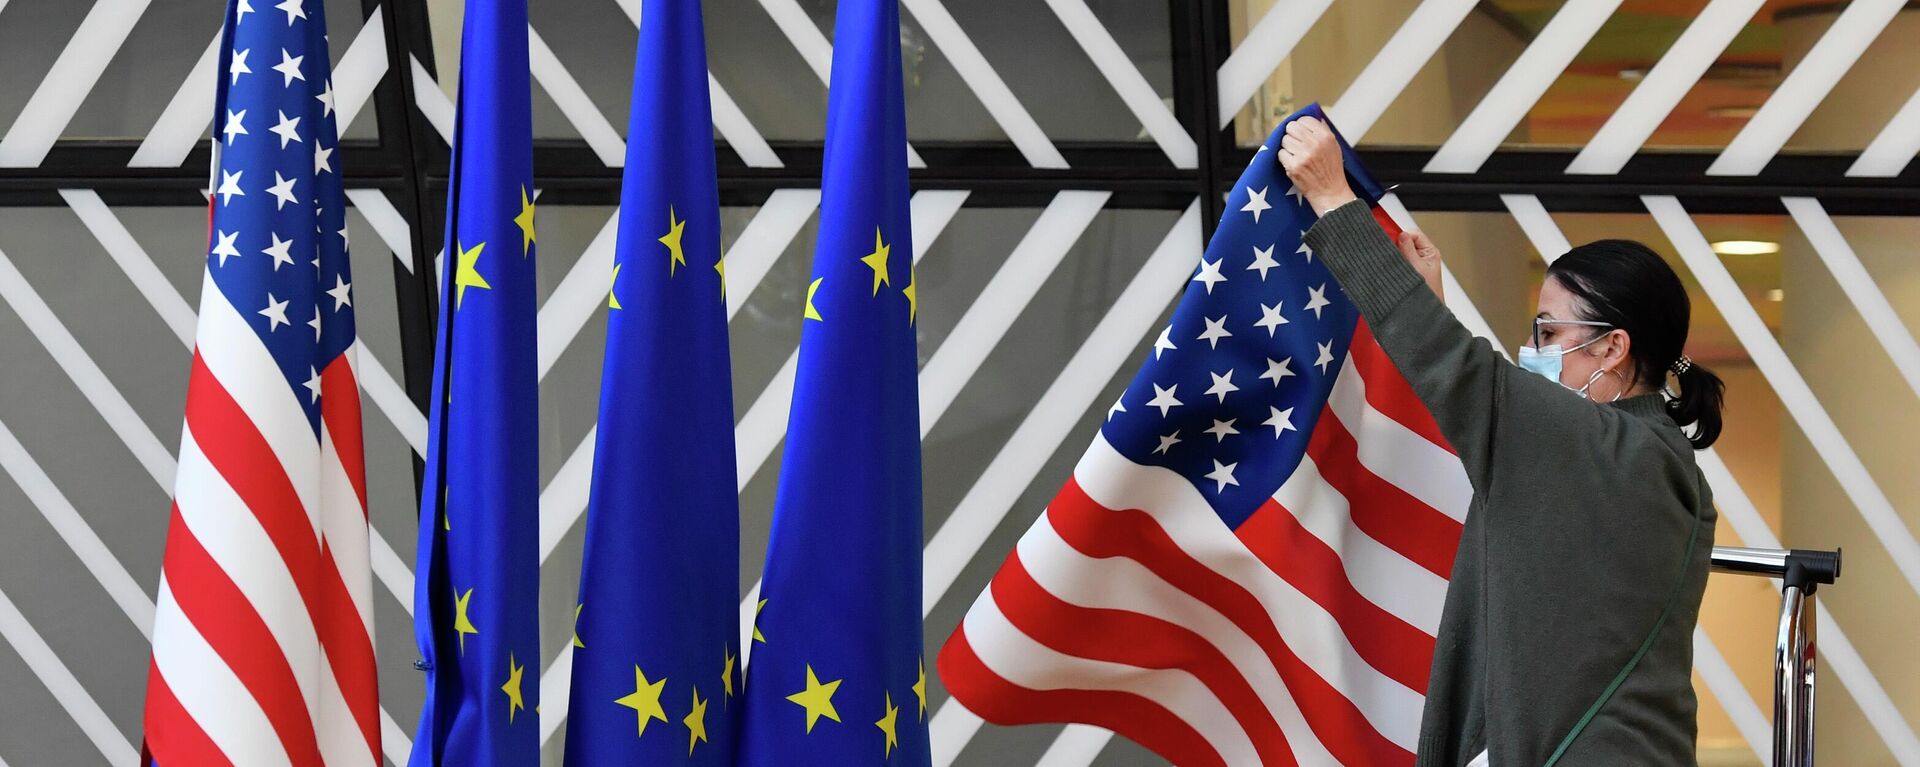 Membro da equipe de protocolo ajusta as bandeiras dos Estados Unidos e da União Europeia (UE) antes da chegada de chanceleres para encontro, em Bruxelas, na Bélgica, em 4 de março de 2022 (foto de arquivo) - Sputnik Brasil, 1920, 27.06.2022